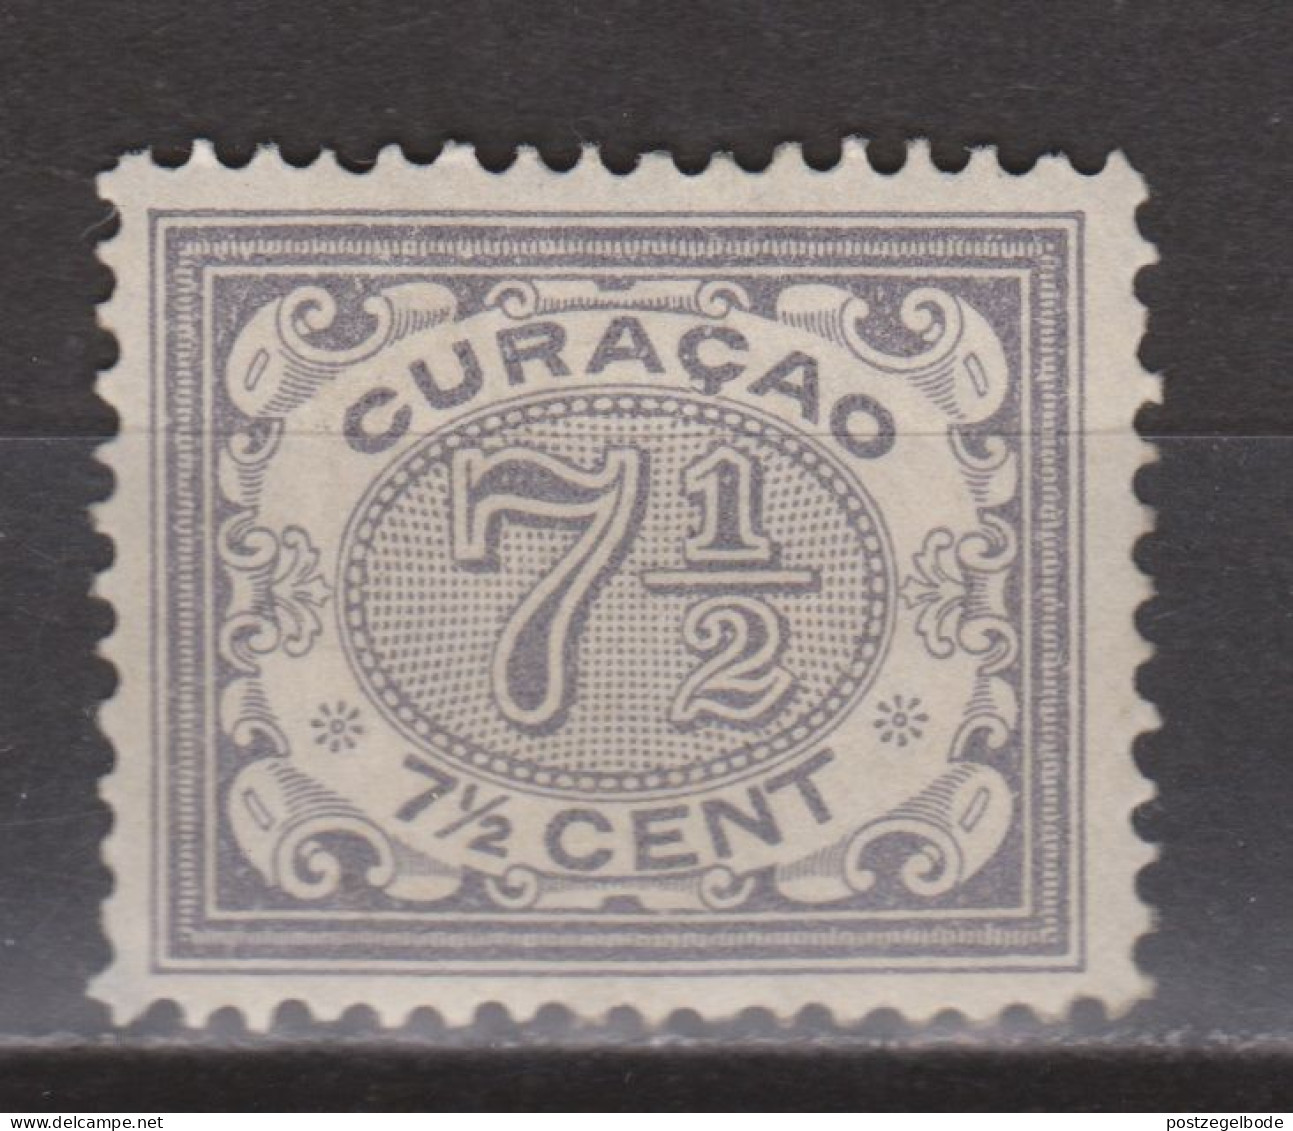 Nederlandse Antillen Curacao 34 MLH ; Cijfer Cipher Cifra Cifre 1904 - Curaçao, Nederlandse Antillen, Aruba